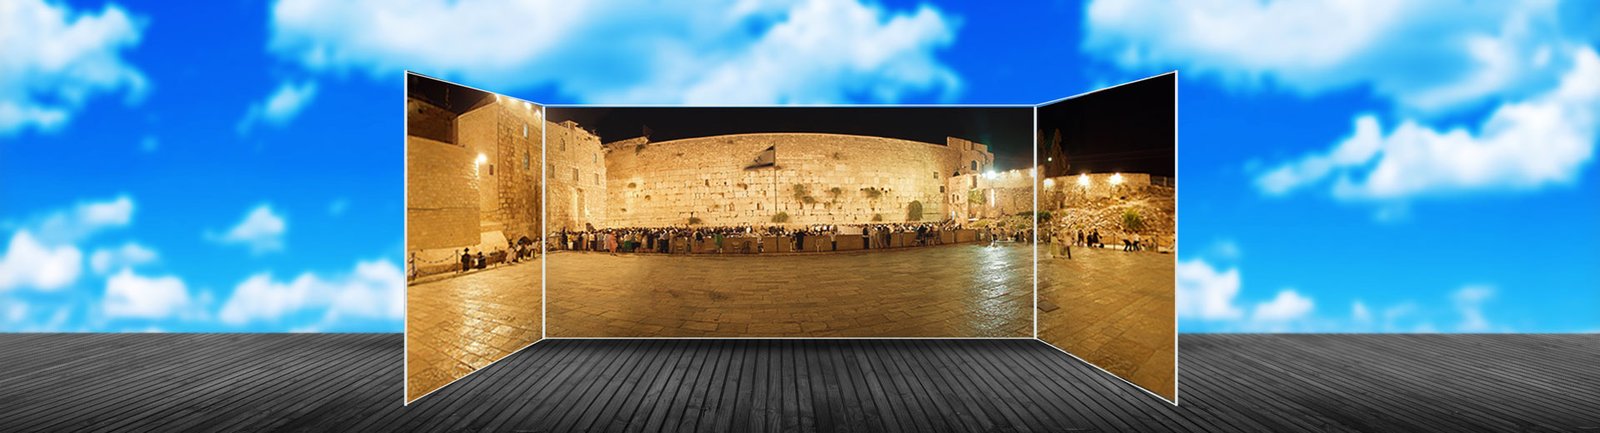 Buy Sukkah Online - Kotel Western Wall Jerusalem